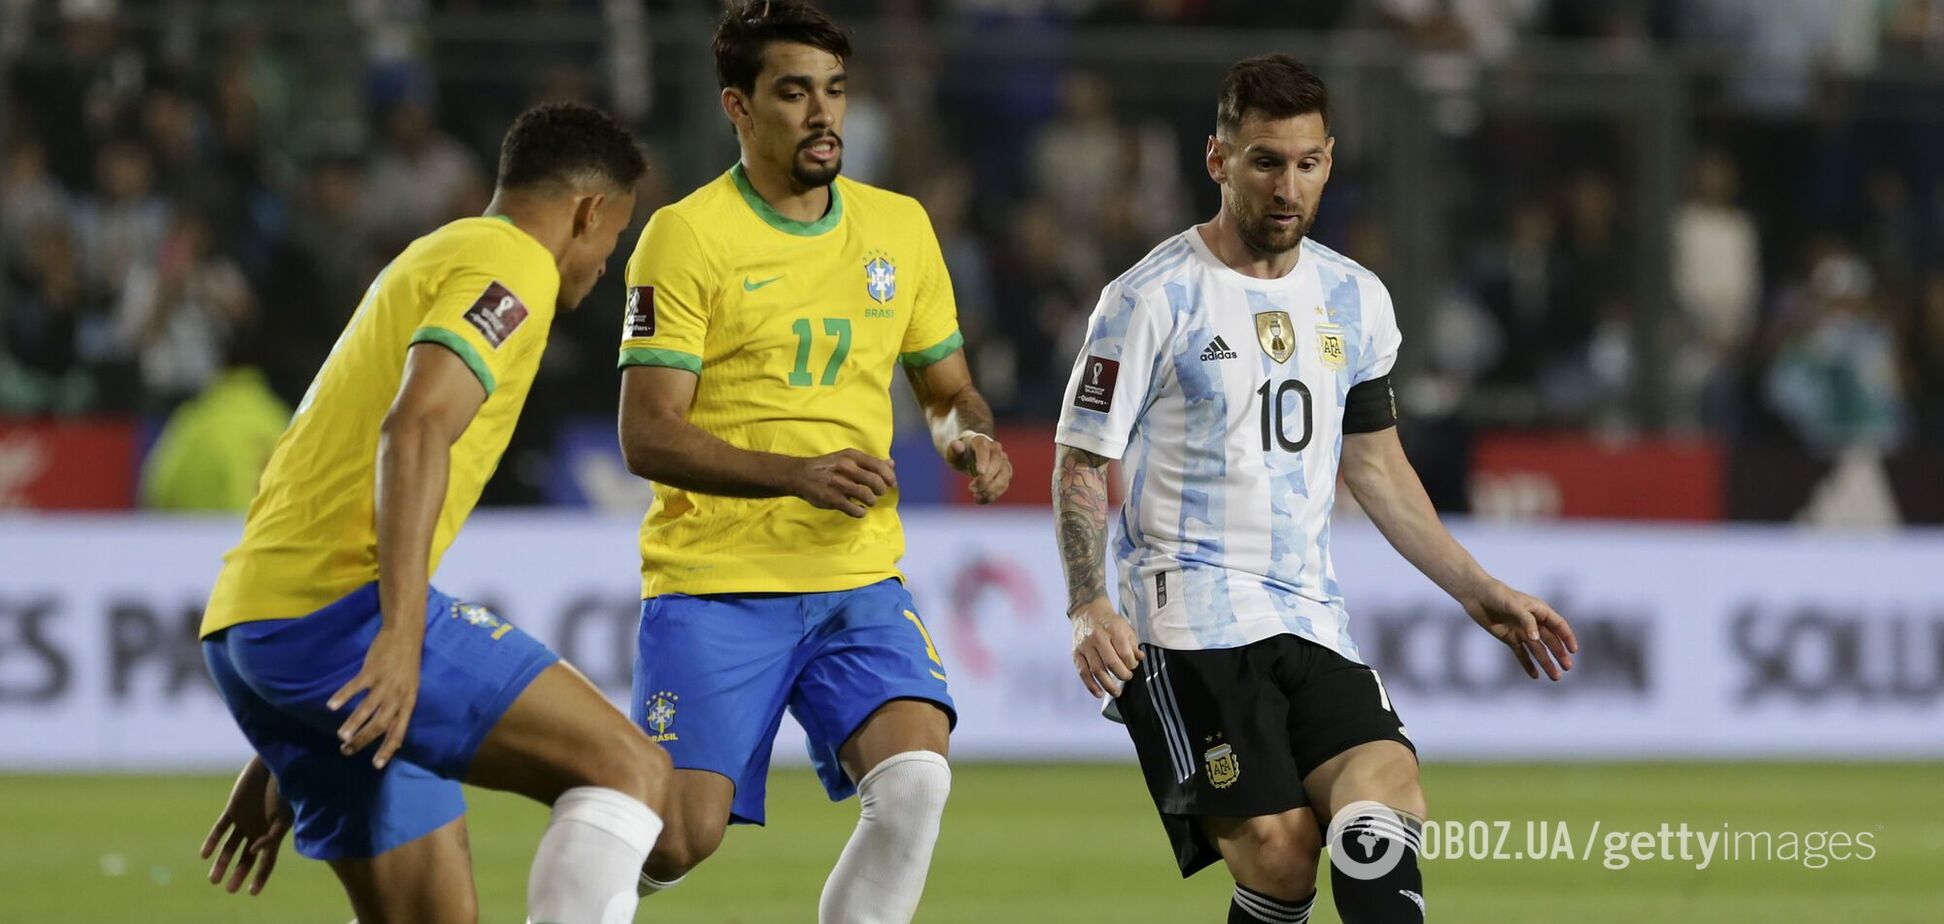 Аргентина с Месси вышла на чемпионат мира после дуэли с Бразилией. Видео